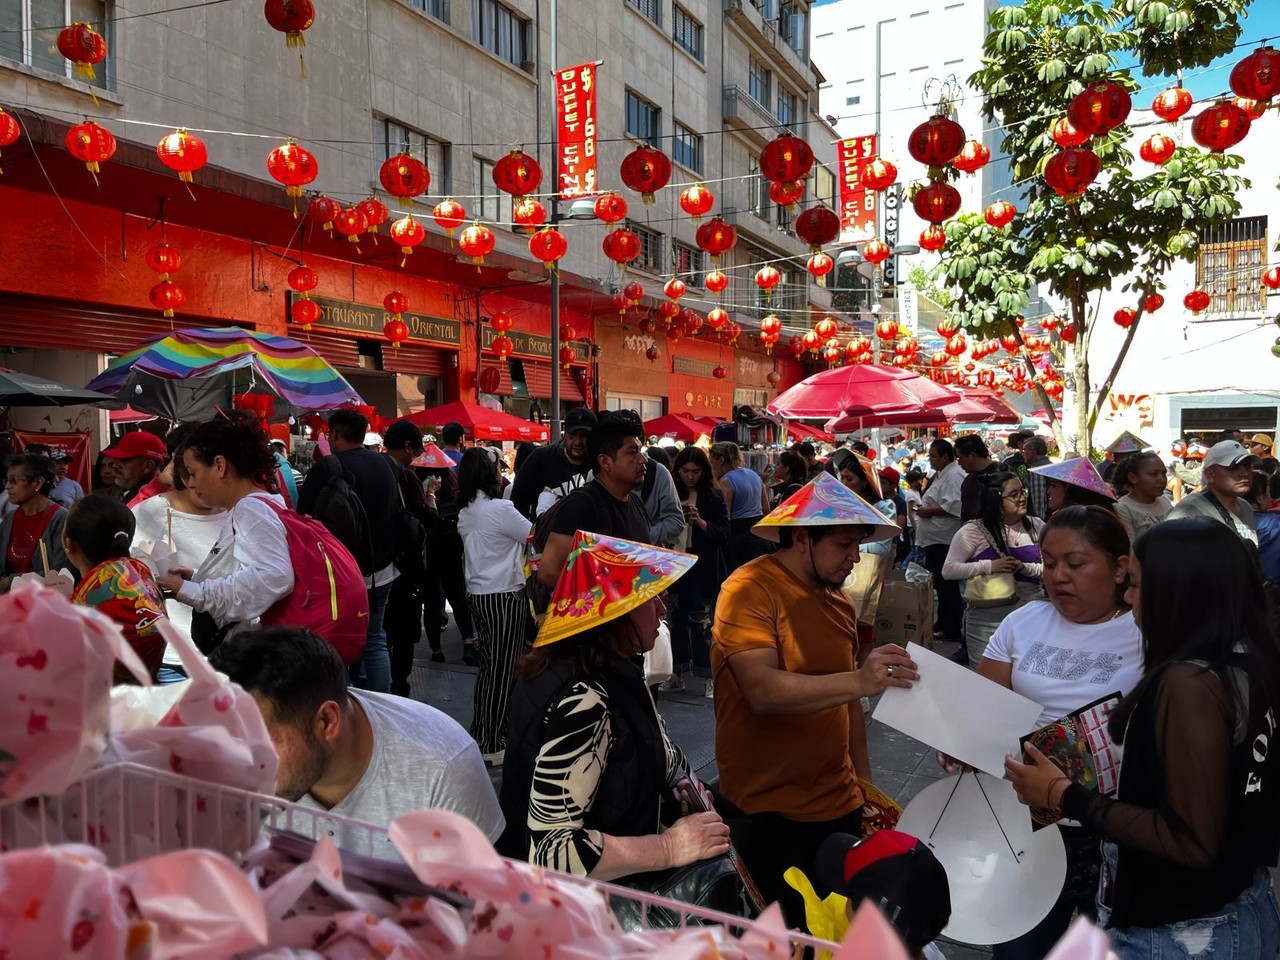 Celebrando el Año Nuevo Chino, los chilangos le ponen sabor a la fiesta. Foto y video: Omar Gómez